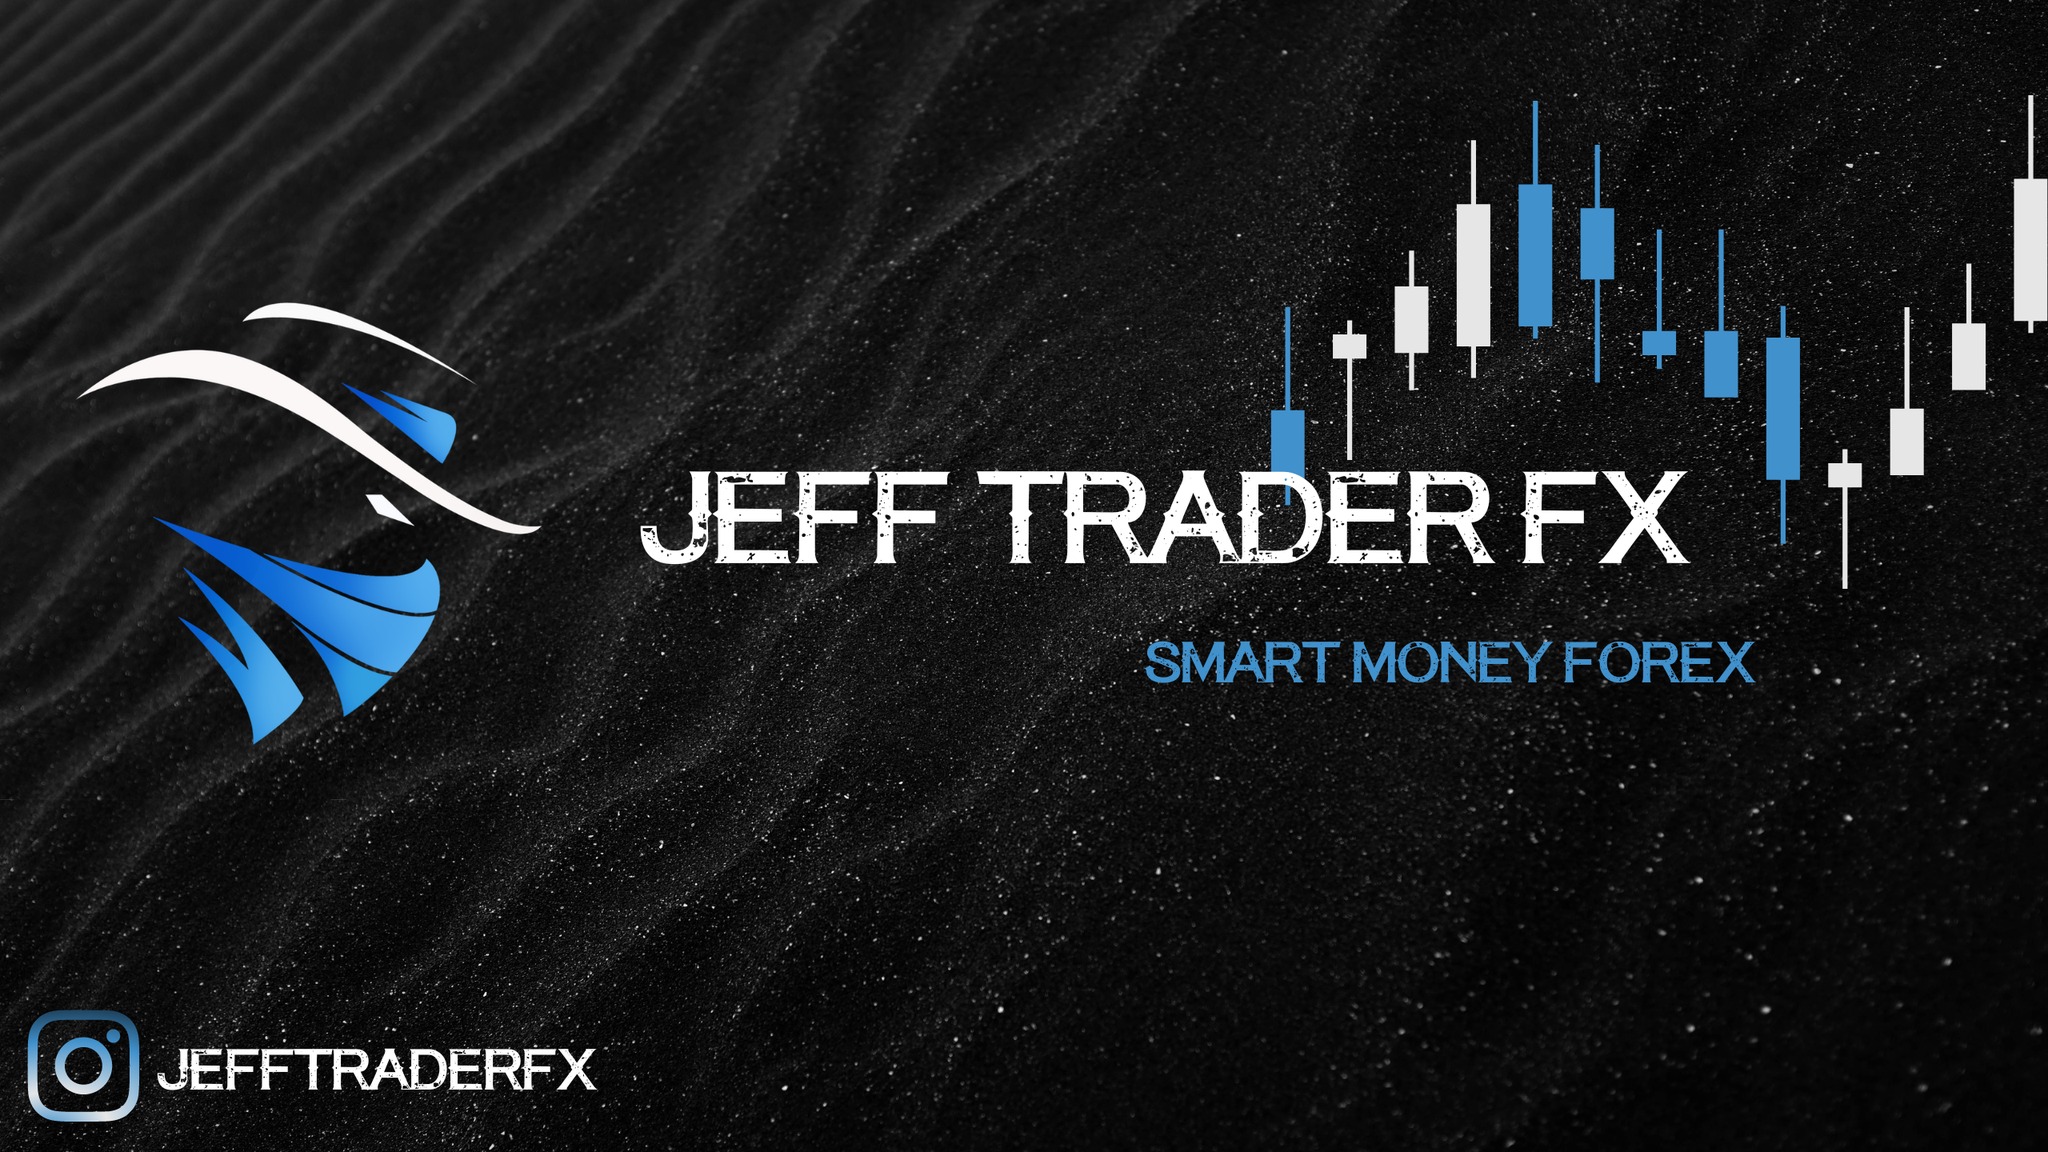 Jeff Trader FX - Smart Money Forex